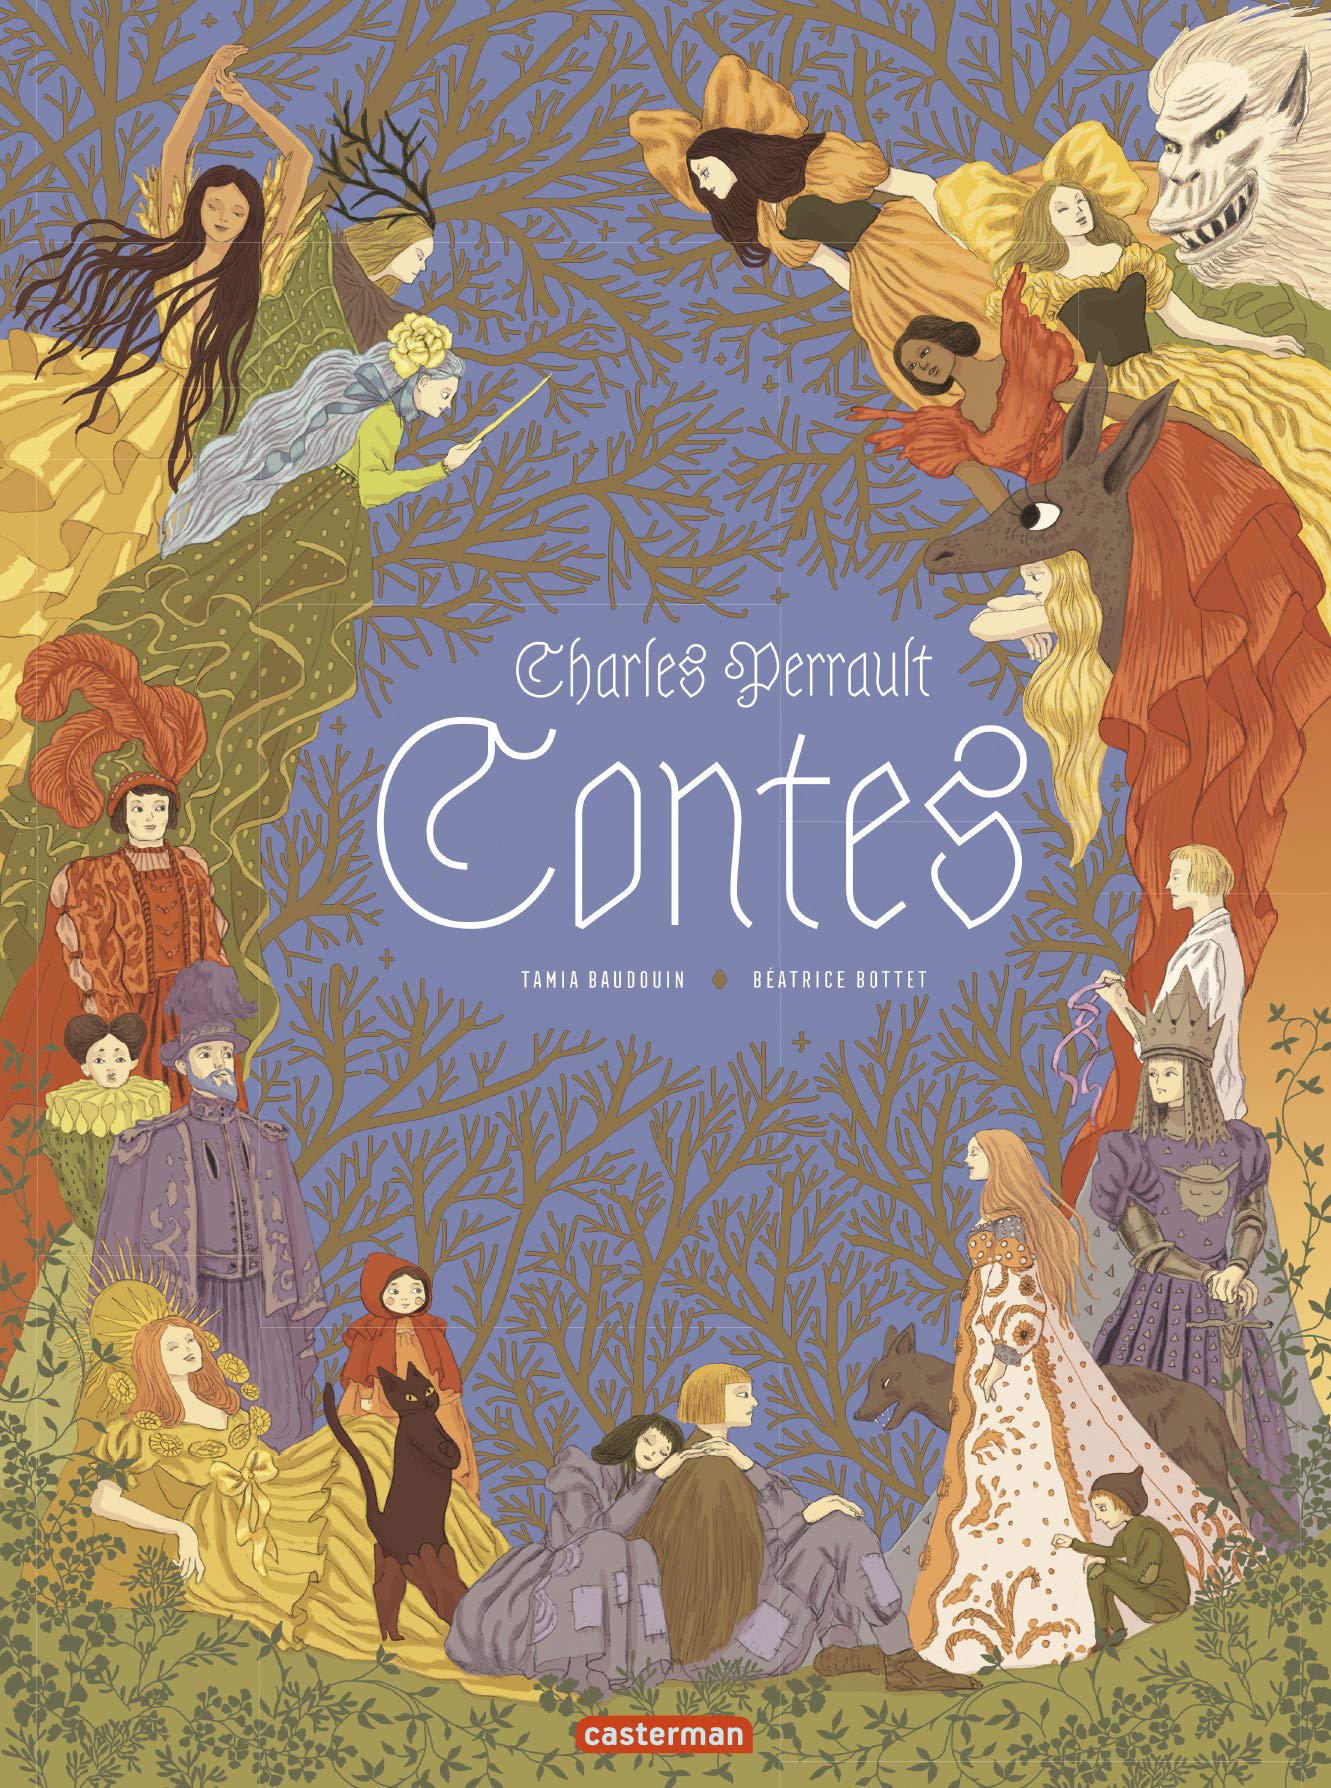 Les Contes de Charles Perrault